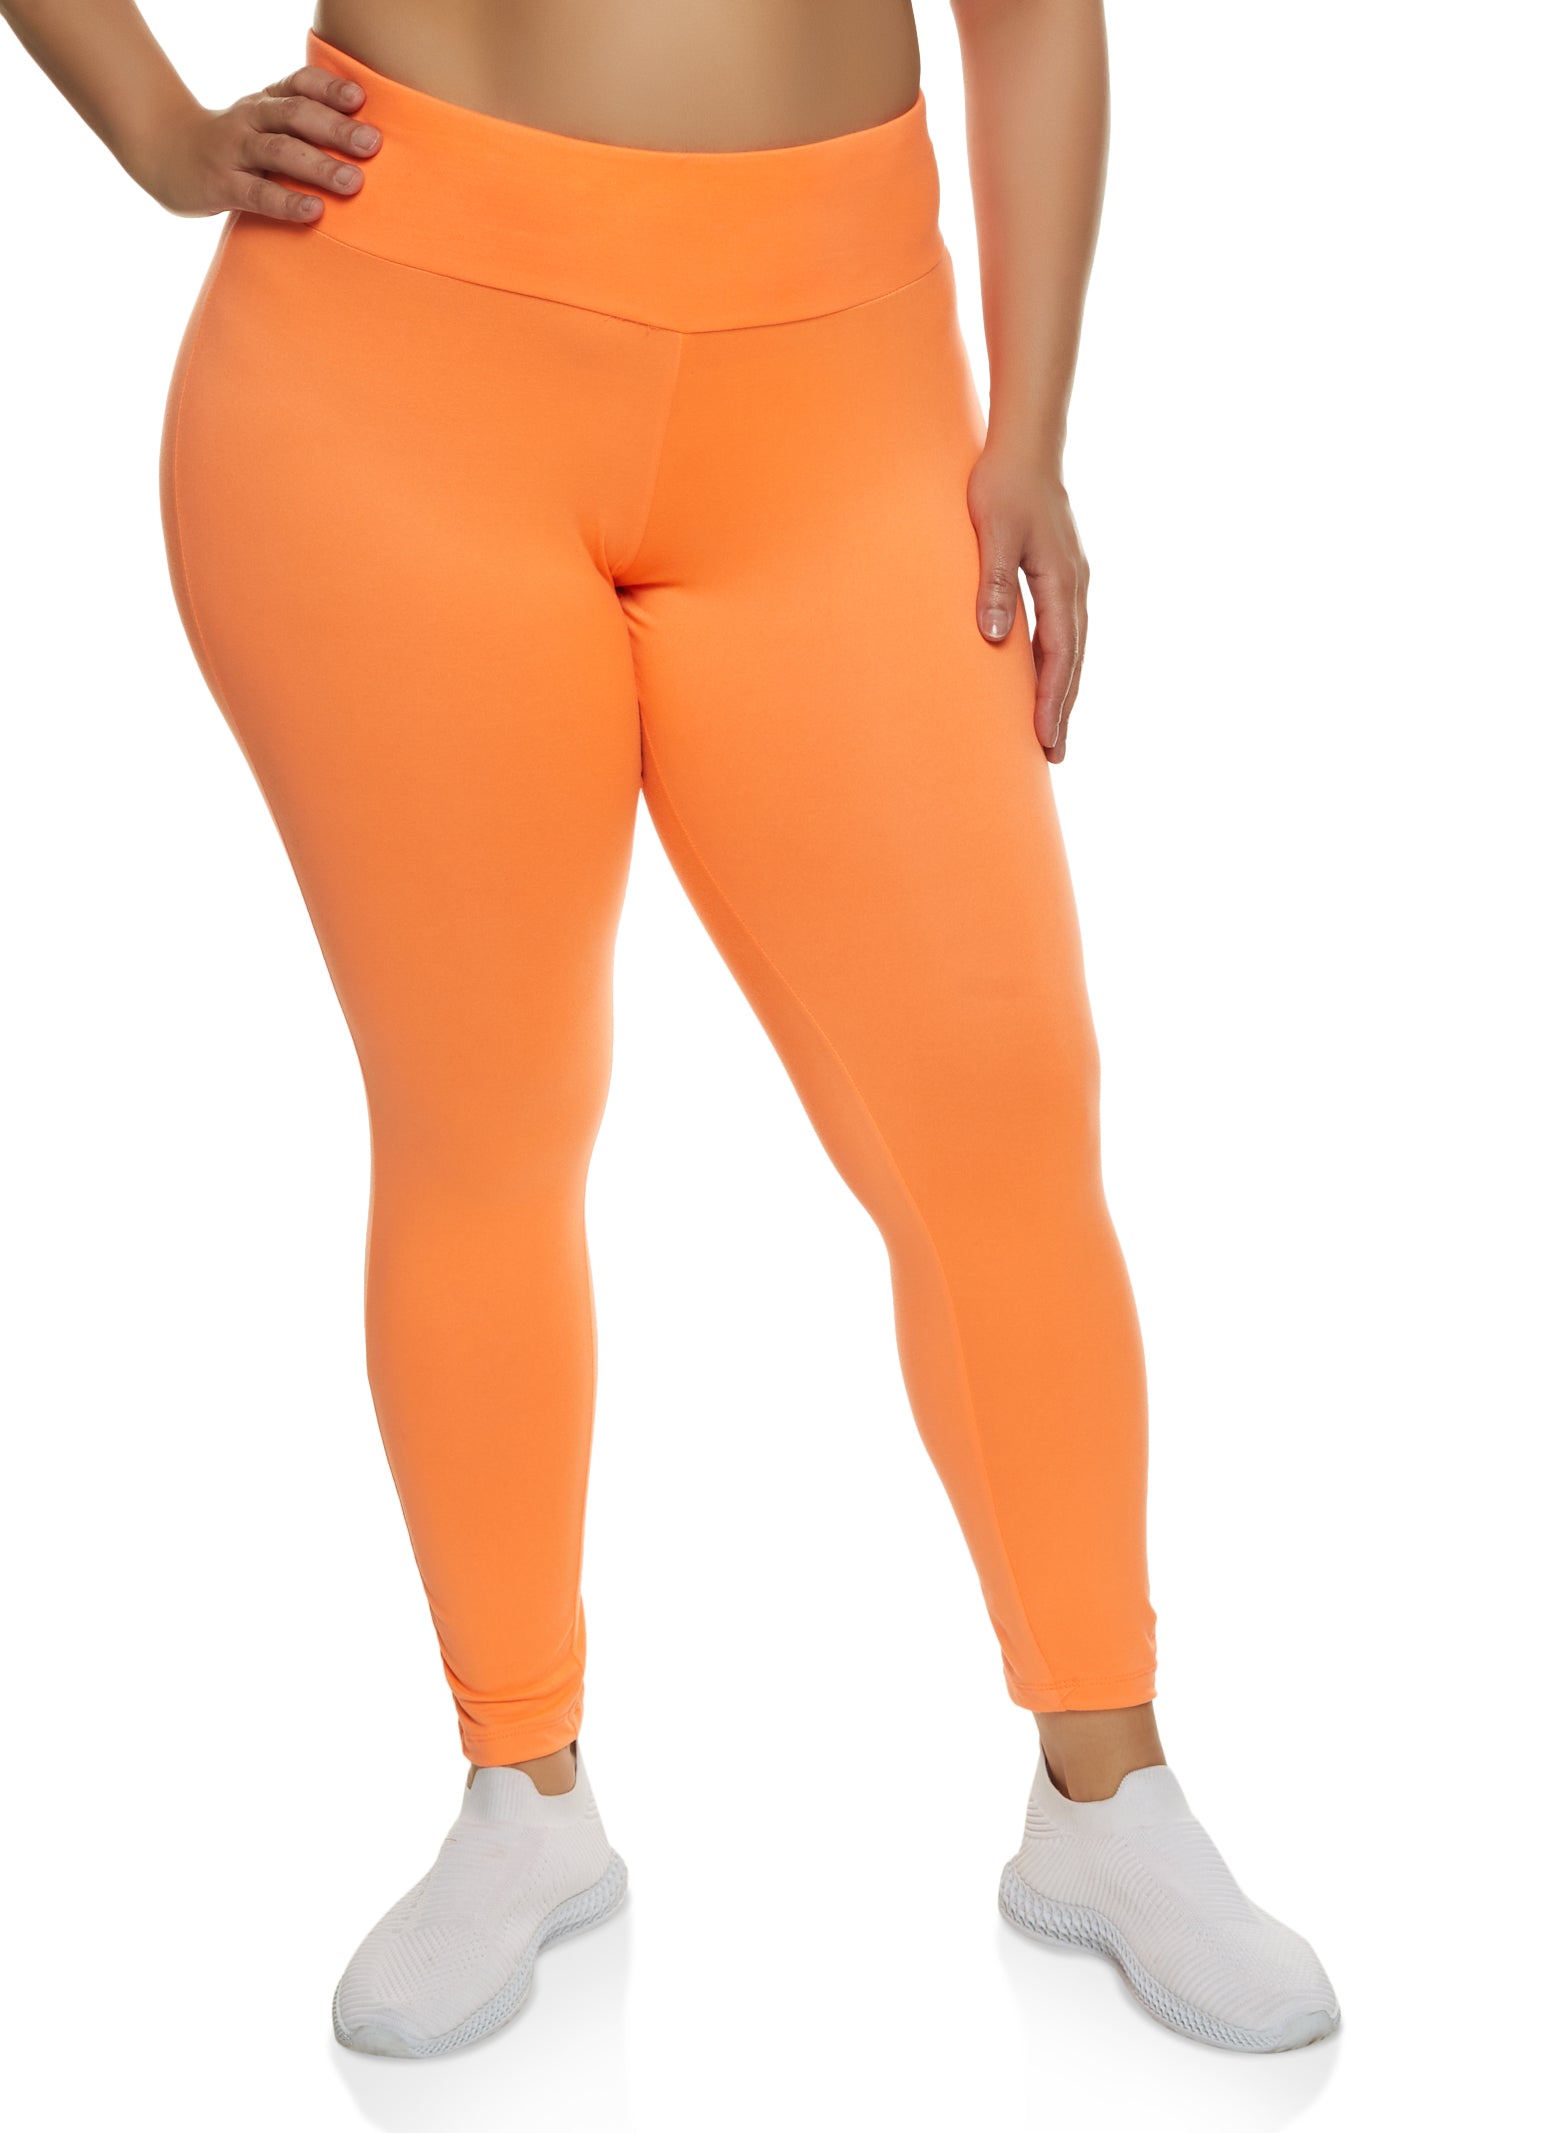 Tangerine Orange Plus Size Leggings  Plus size leggings, Plus size,  Leggings